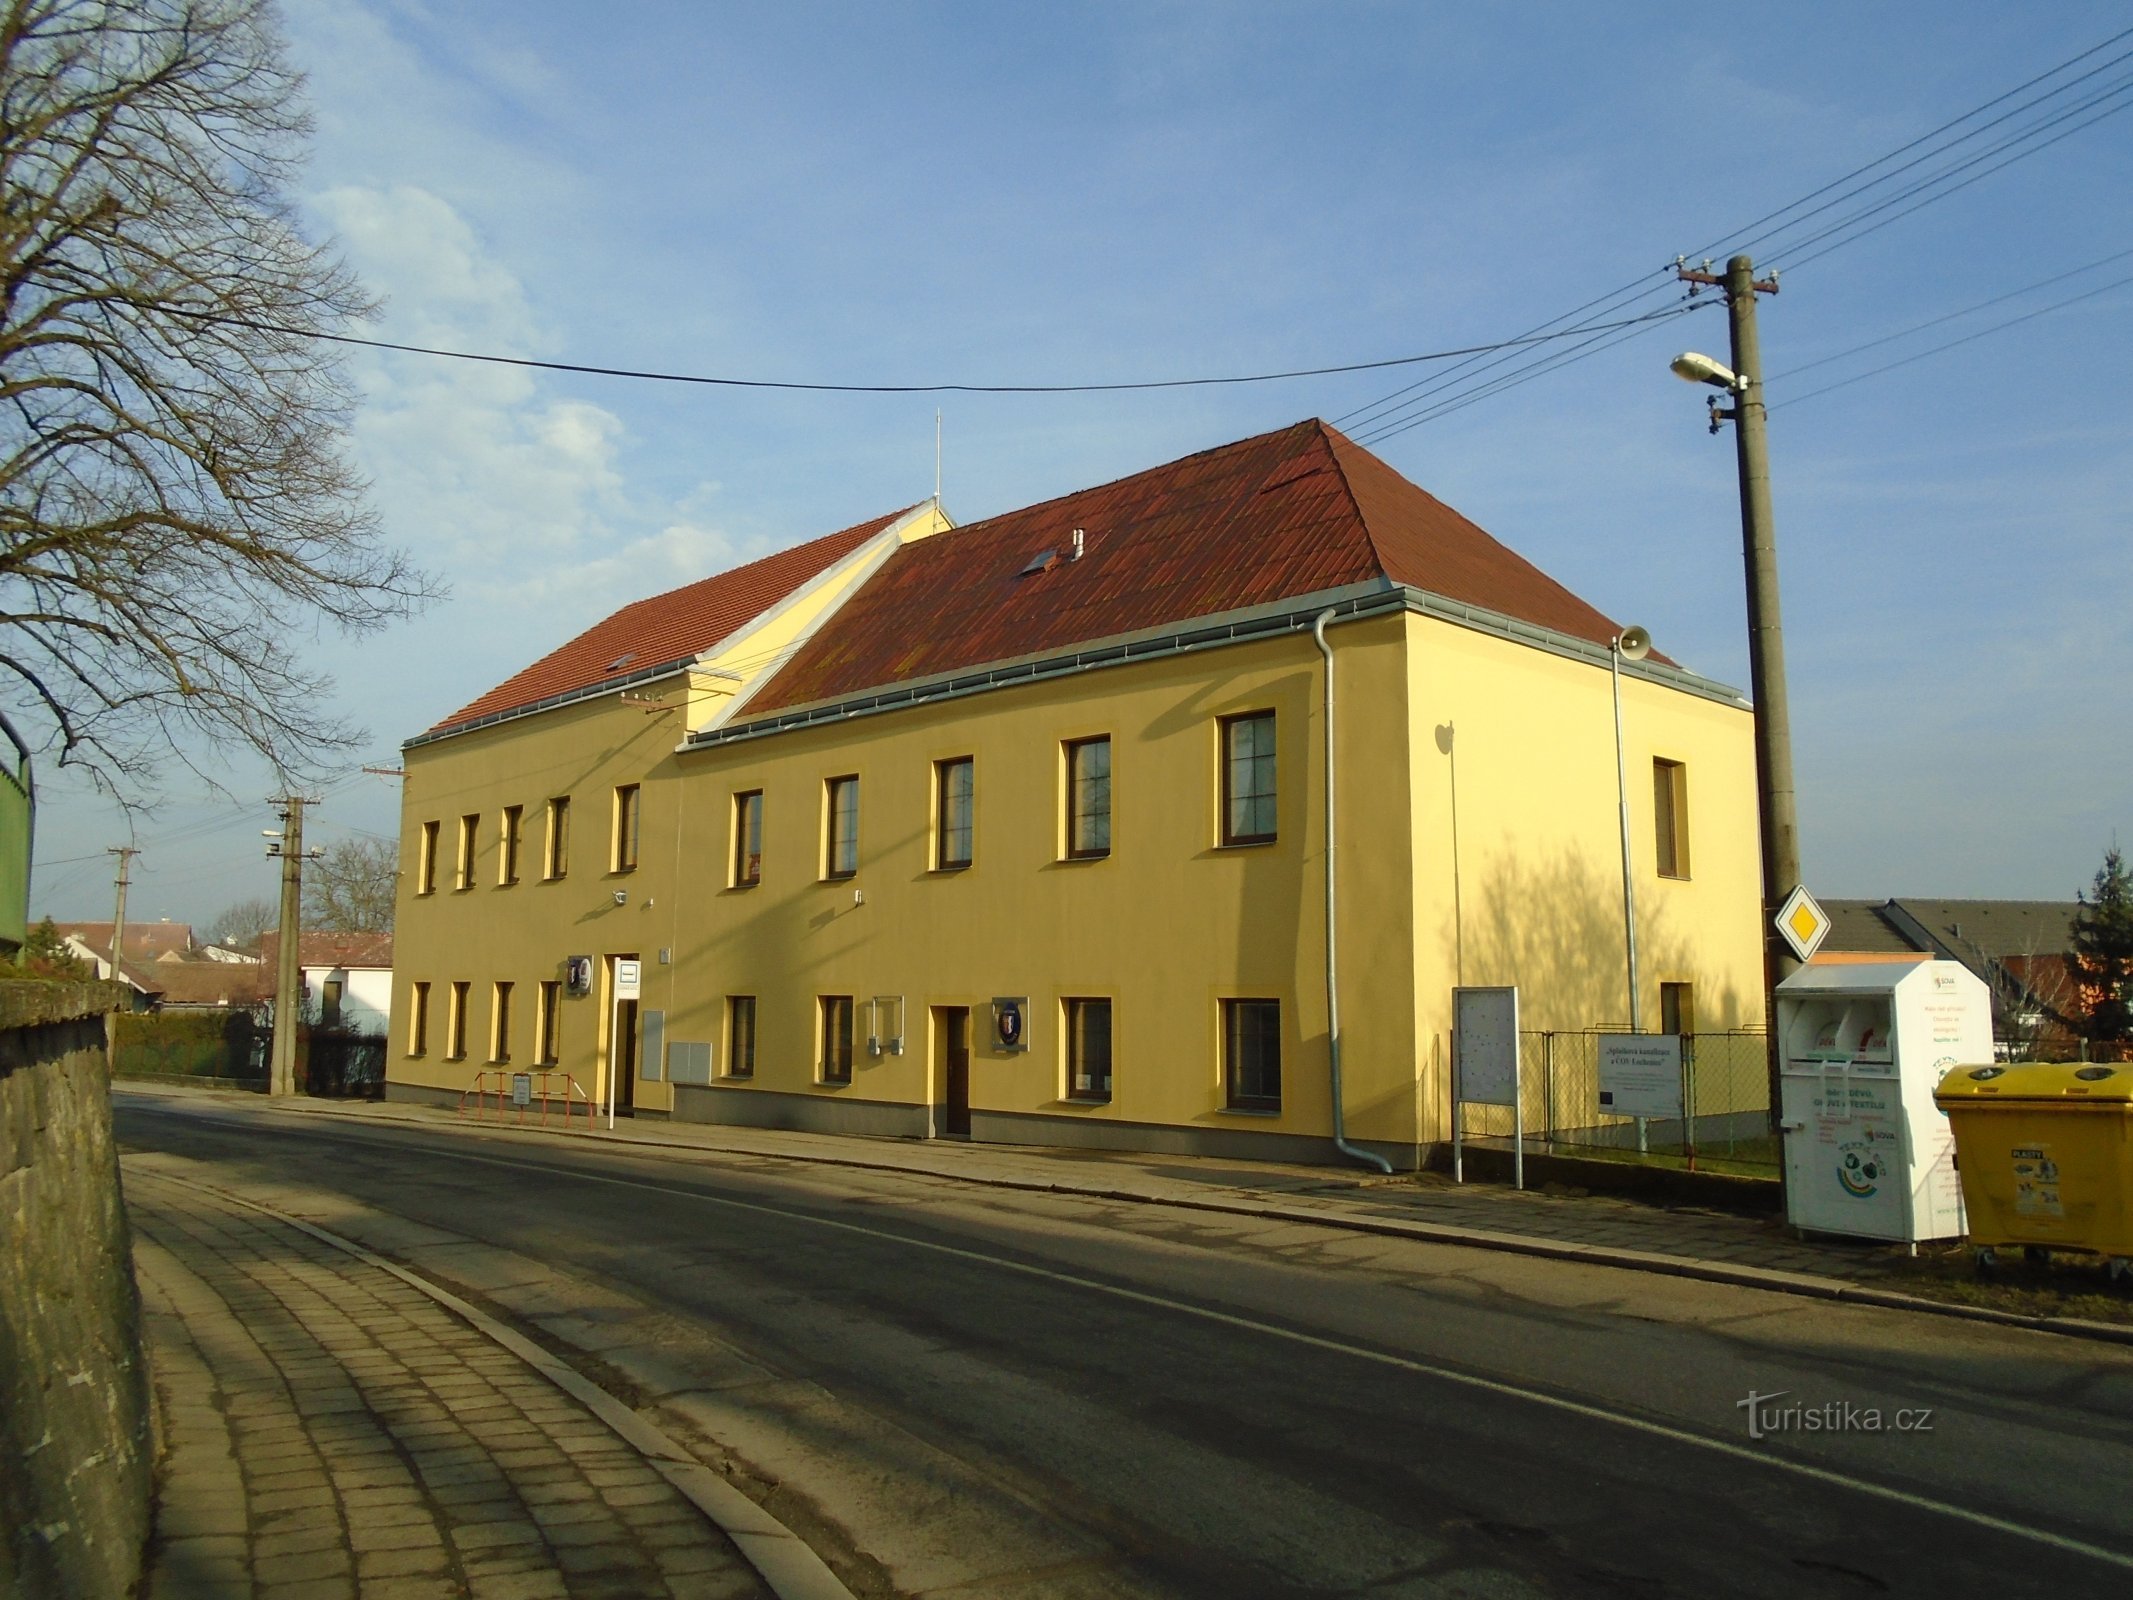 Văn phòng thành phố (Lochenice)